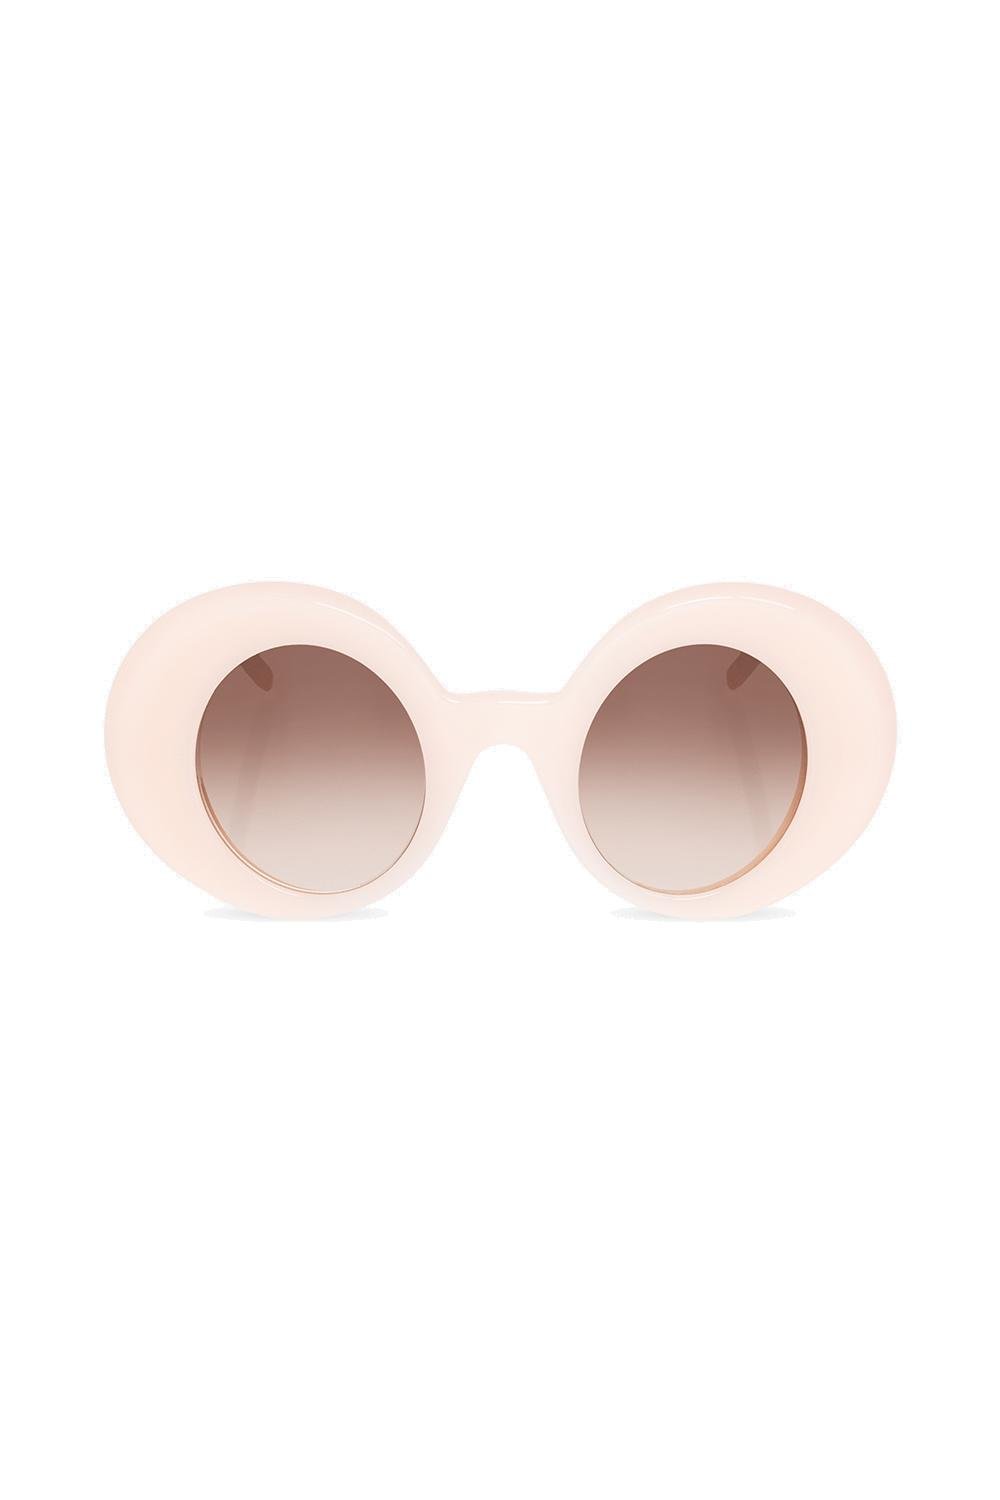 Loewe Oval-Frame Sunglasses